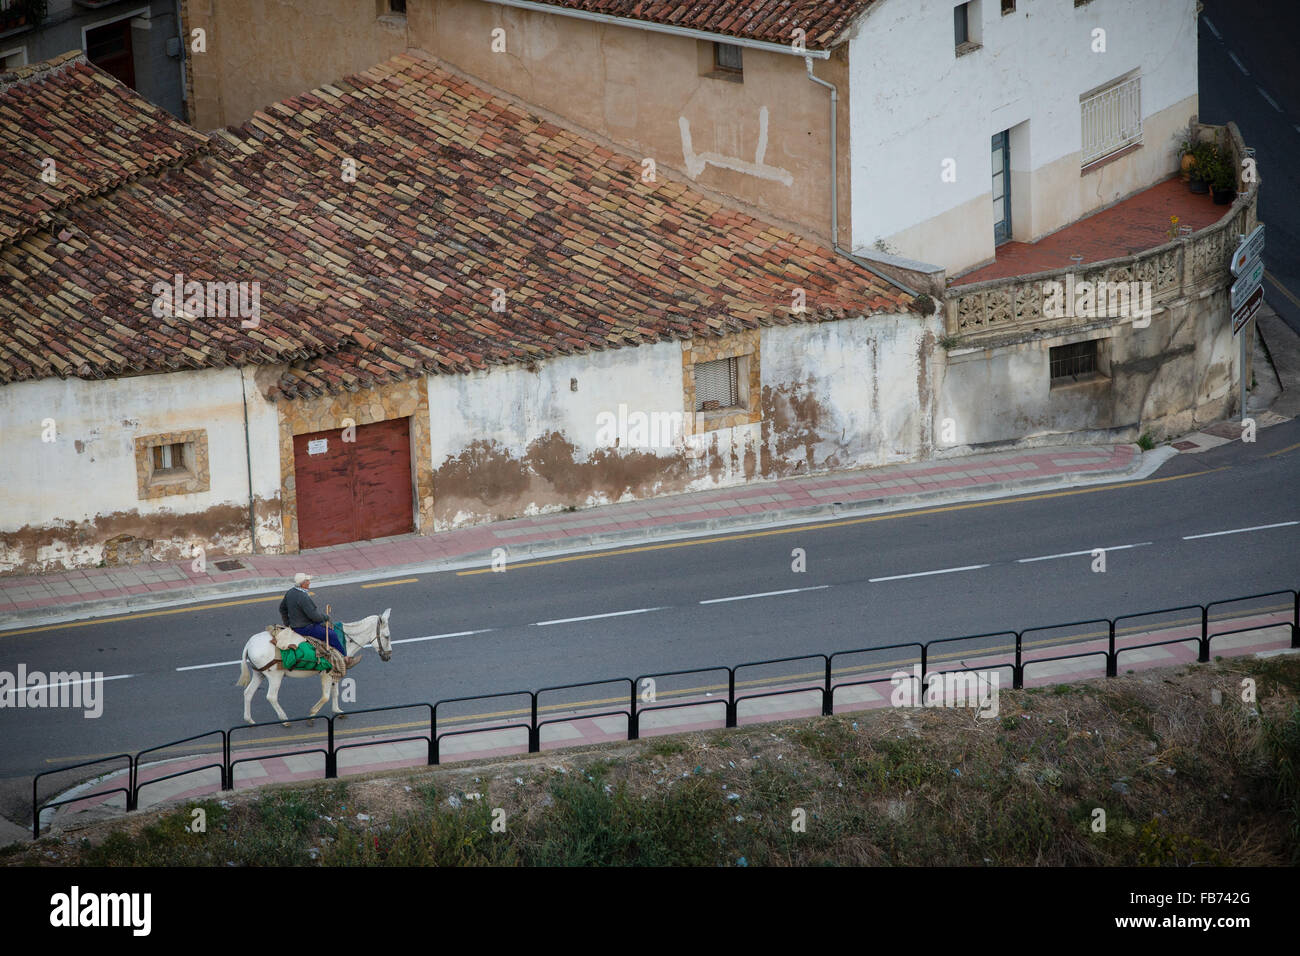 3/10/15 l'homme sur l'âne, Cervera de Rio Alhama, La Rioja, Espagne Banque D'Images